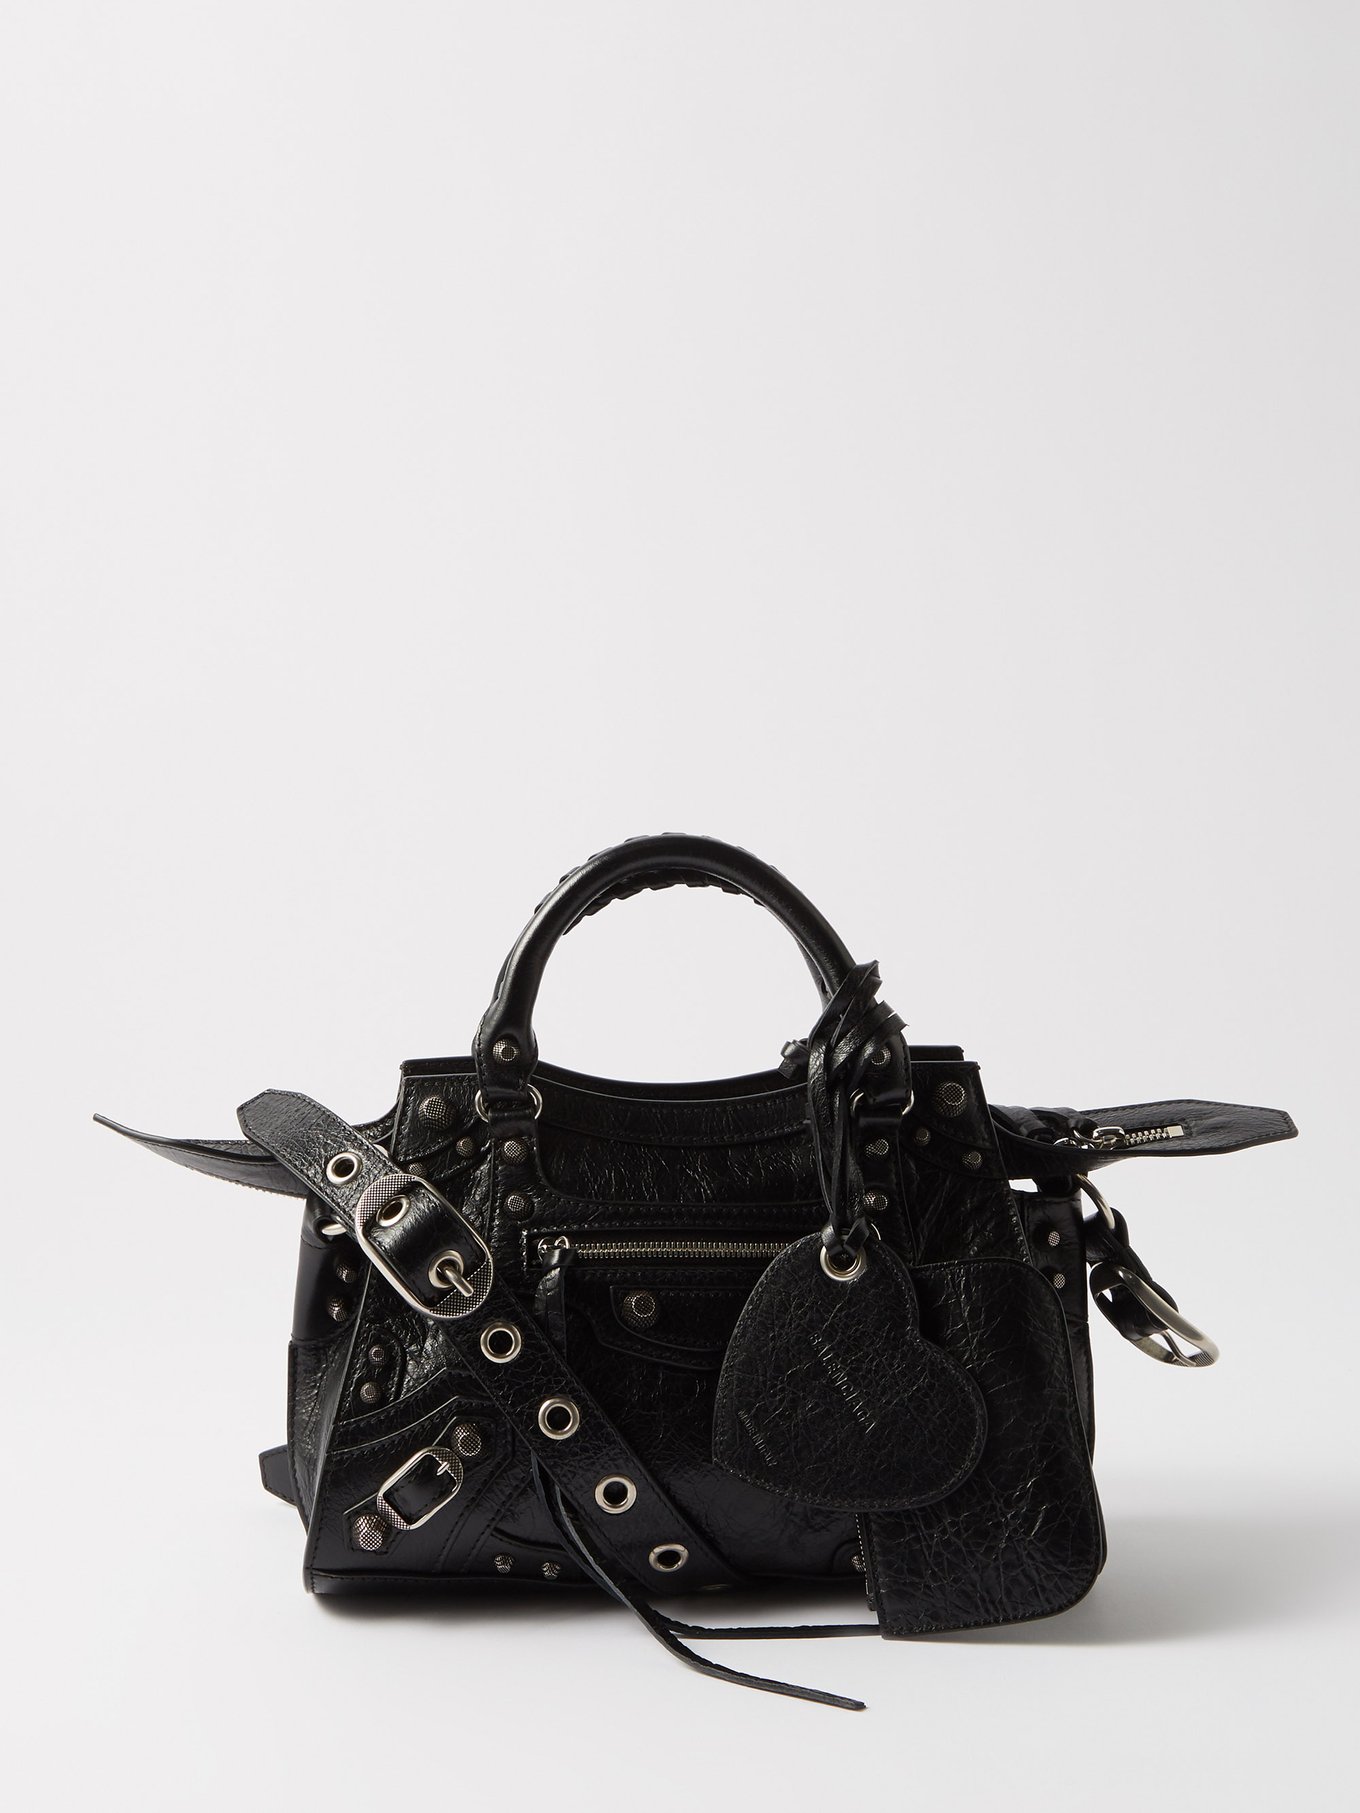 Balenciaga Black Leather Mini City Bag